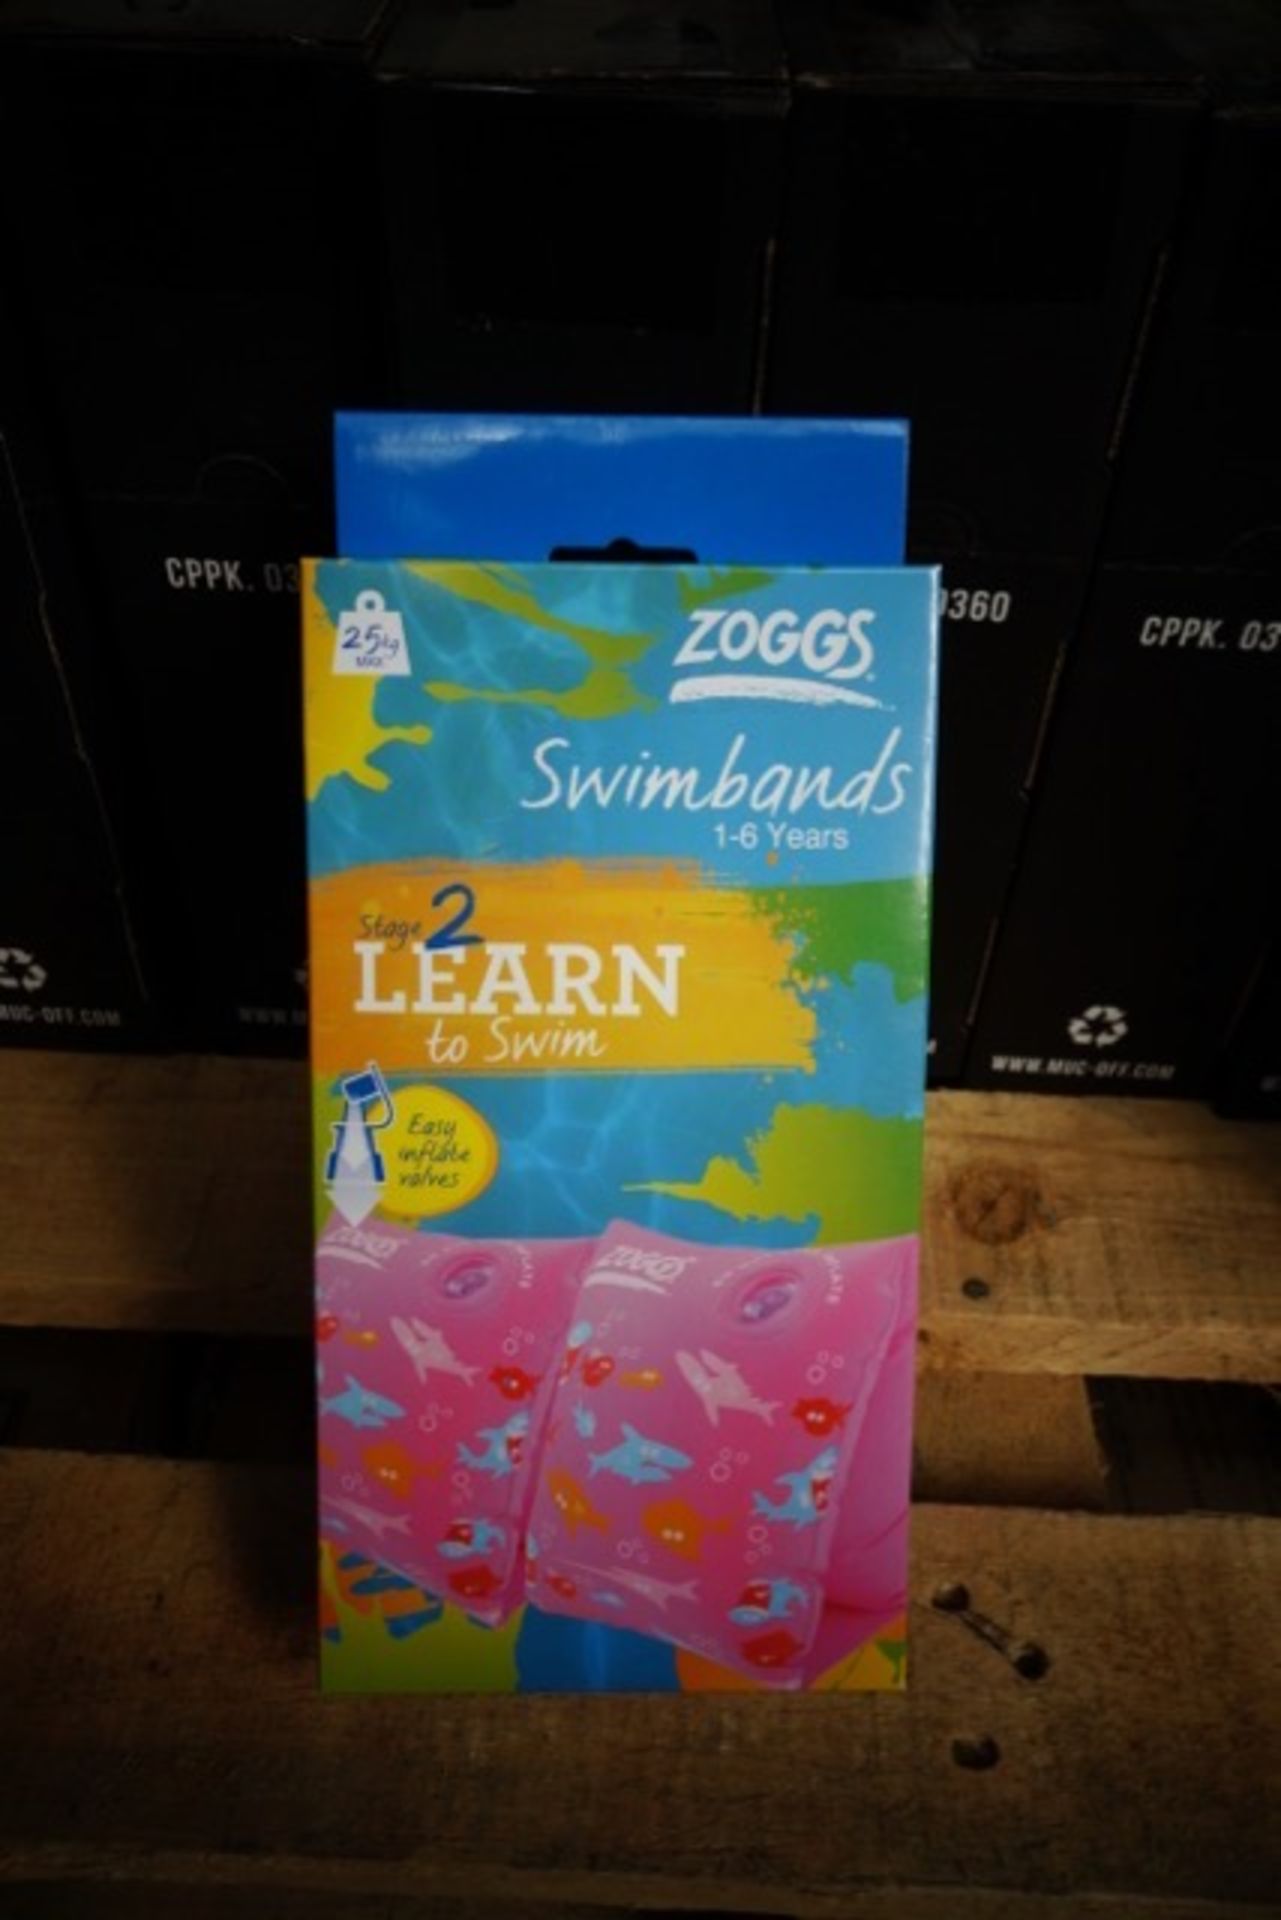 60 x Brand New Zoggs Learn 2 Swim Swimbands 1-6 years Pink Shark